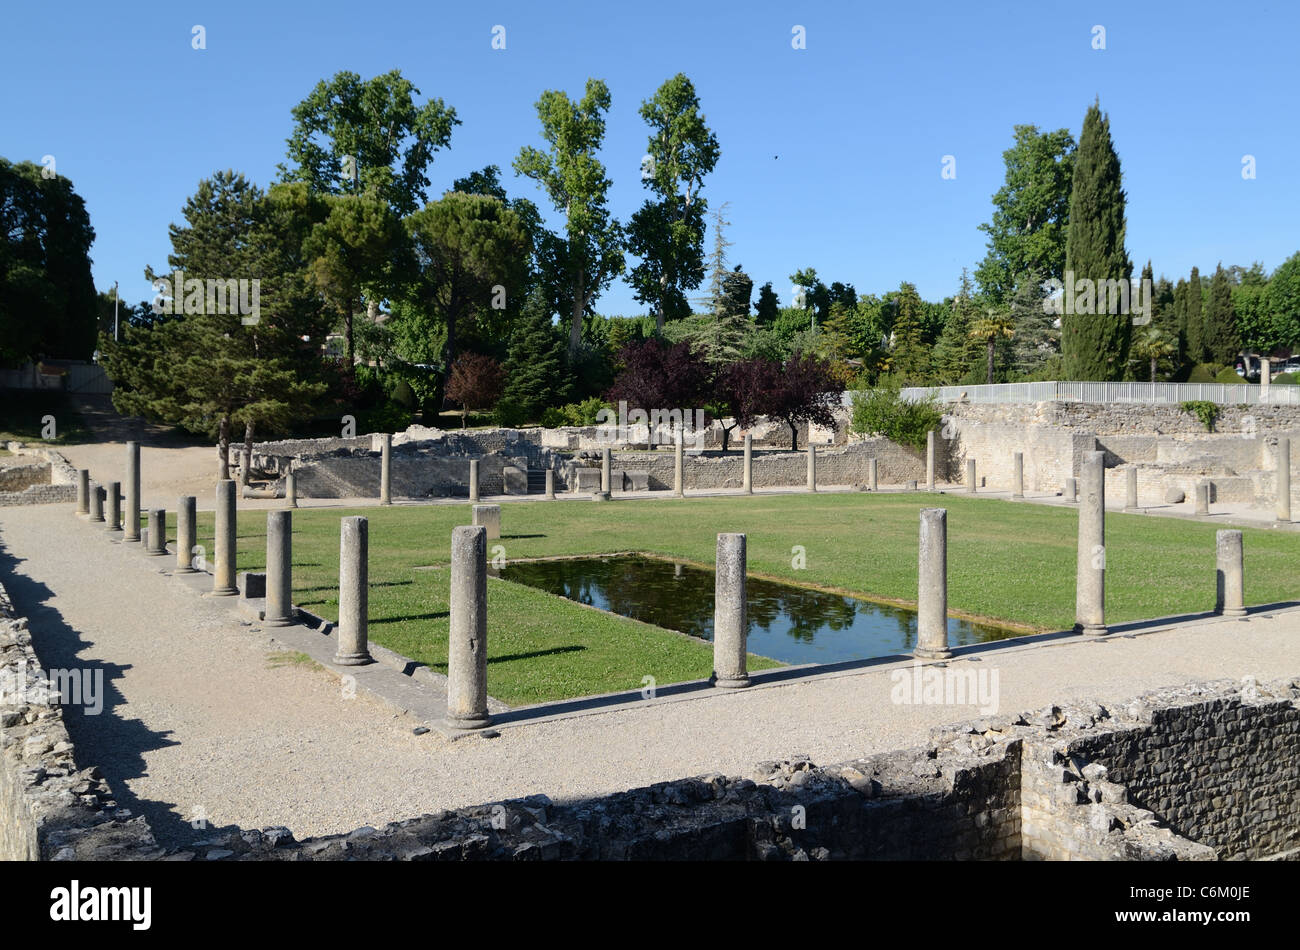 Roman Town & Ruins, Courtyard Gardens & Pool, Vaison-la-Romaine, Quartier de la Villasse, Vaucluse, Provence, France Stock Photo